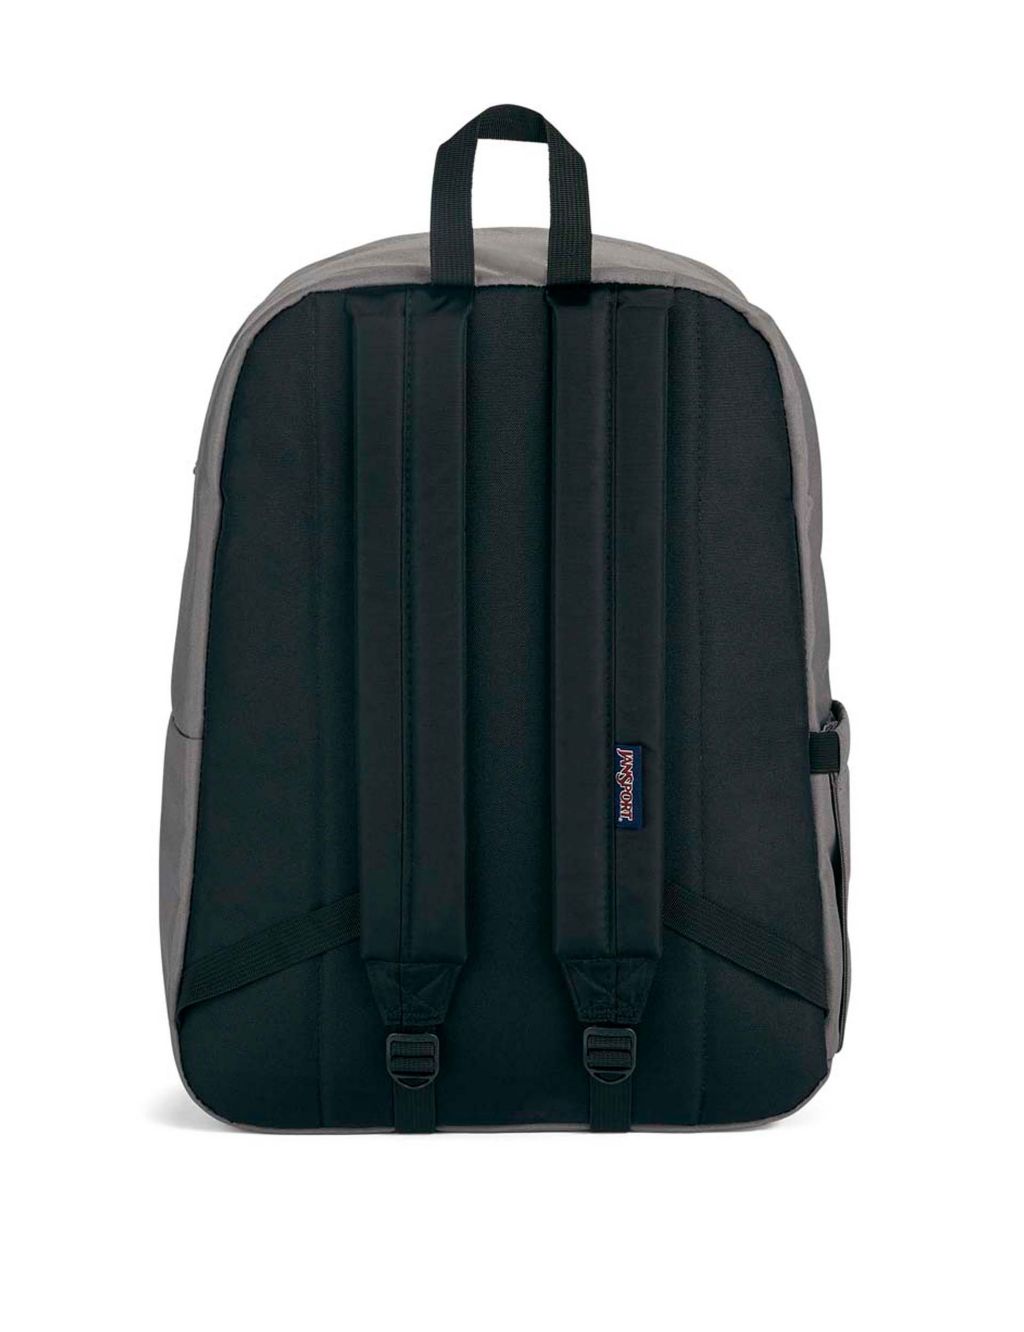 SuperBreak Plus Backpack 4 of 7